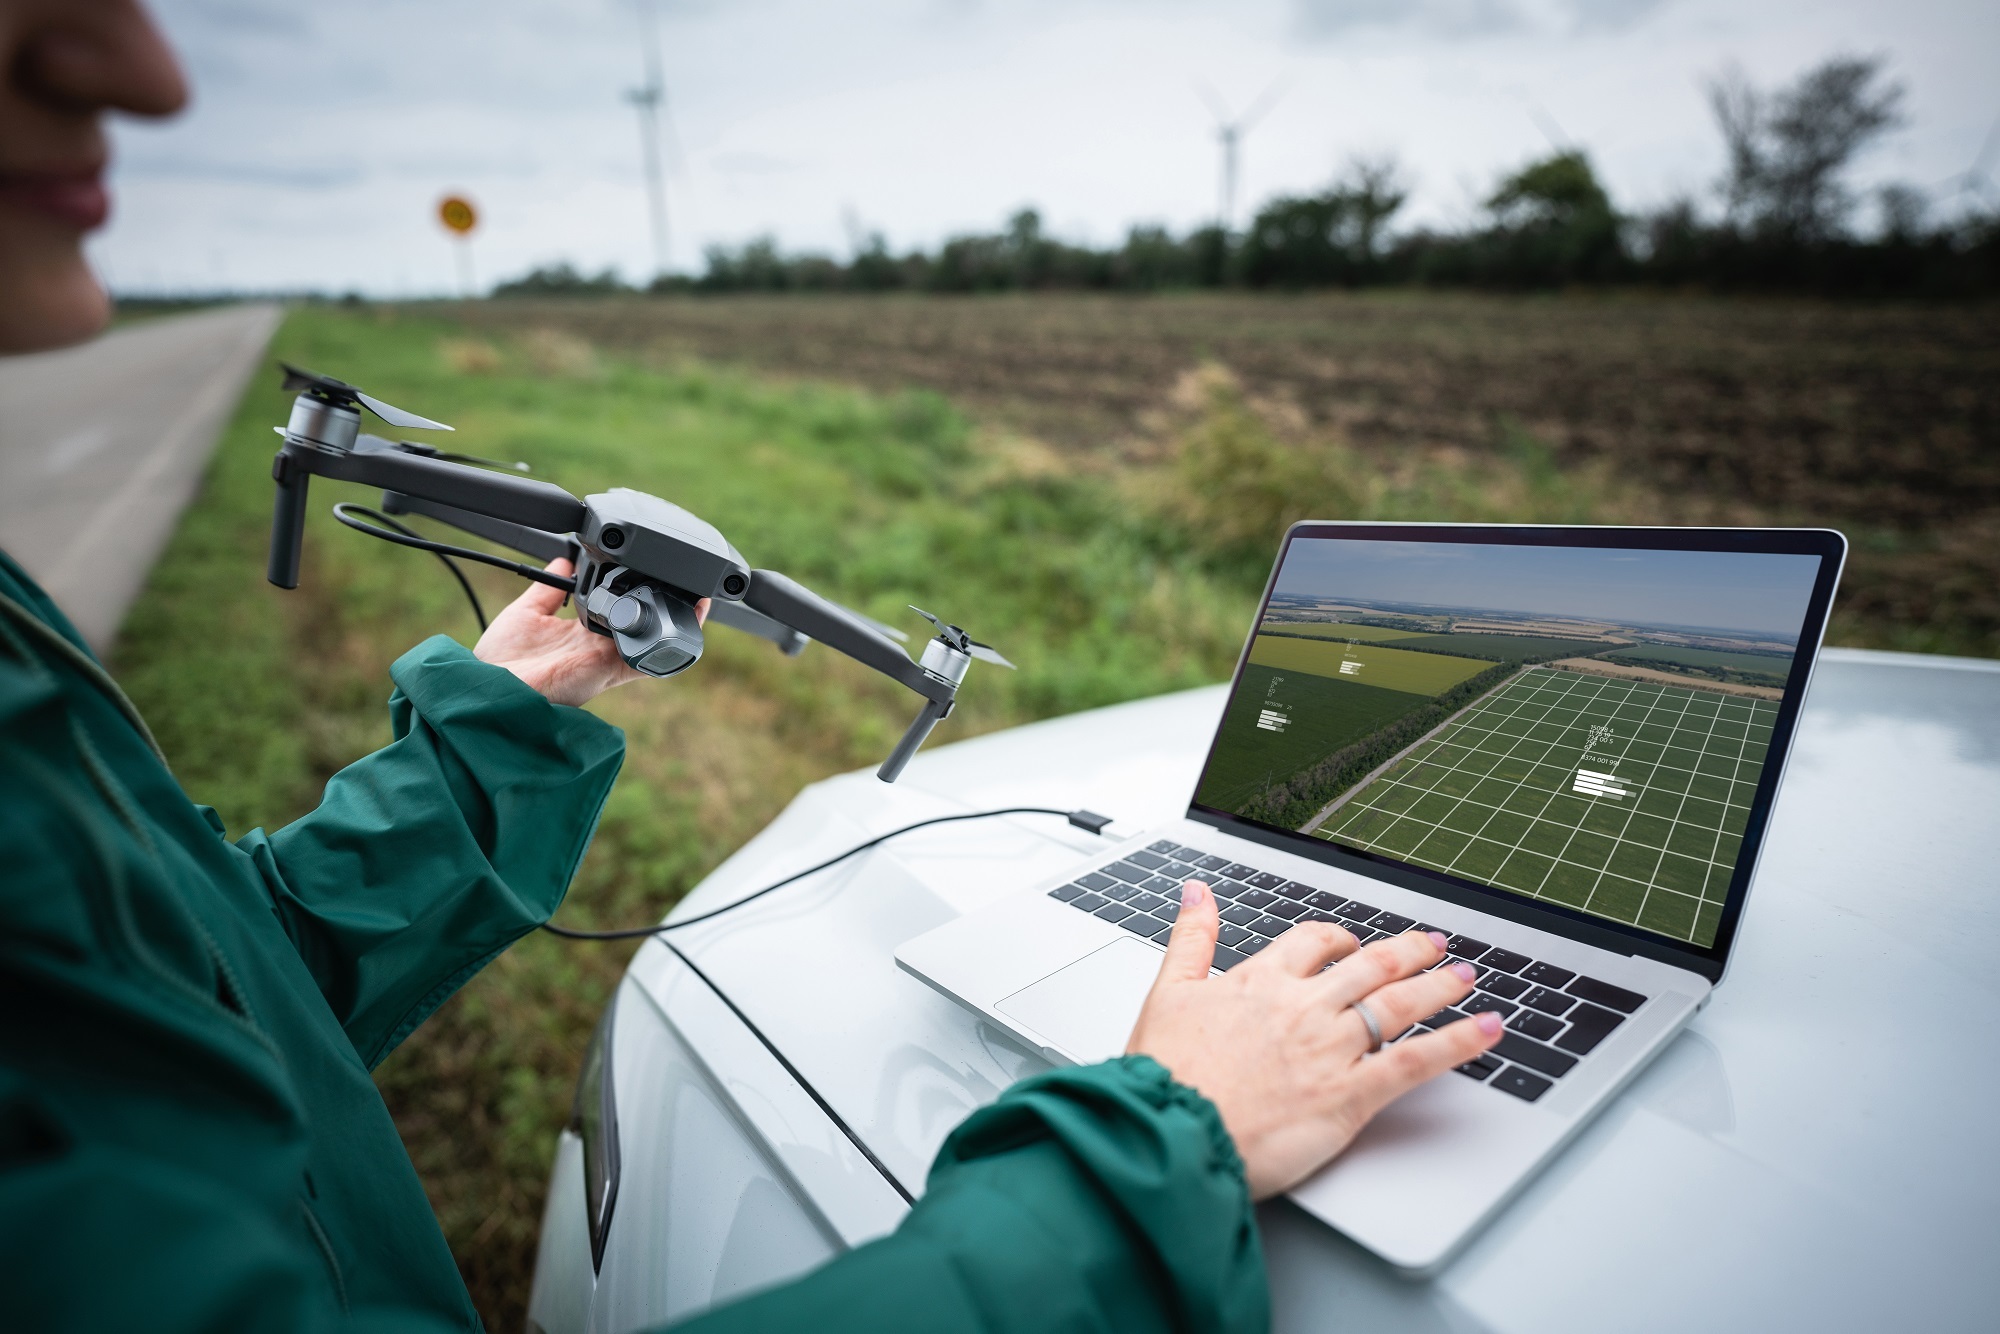 La revolución del campo: agricultura de precisión, inteligencia artificial y formación continua